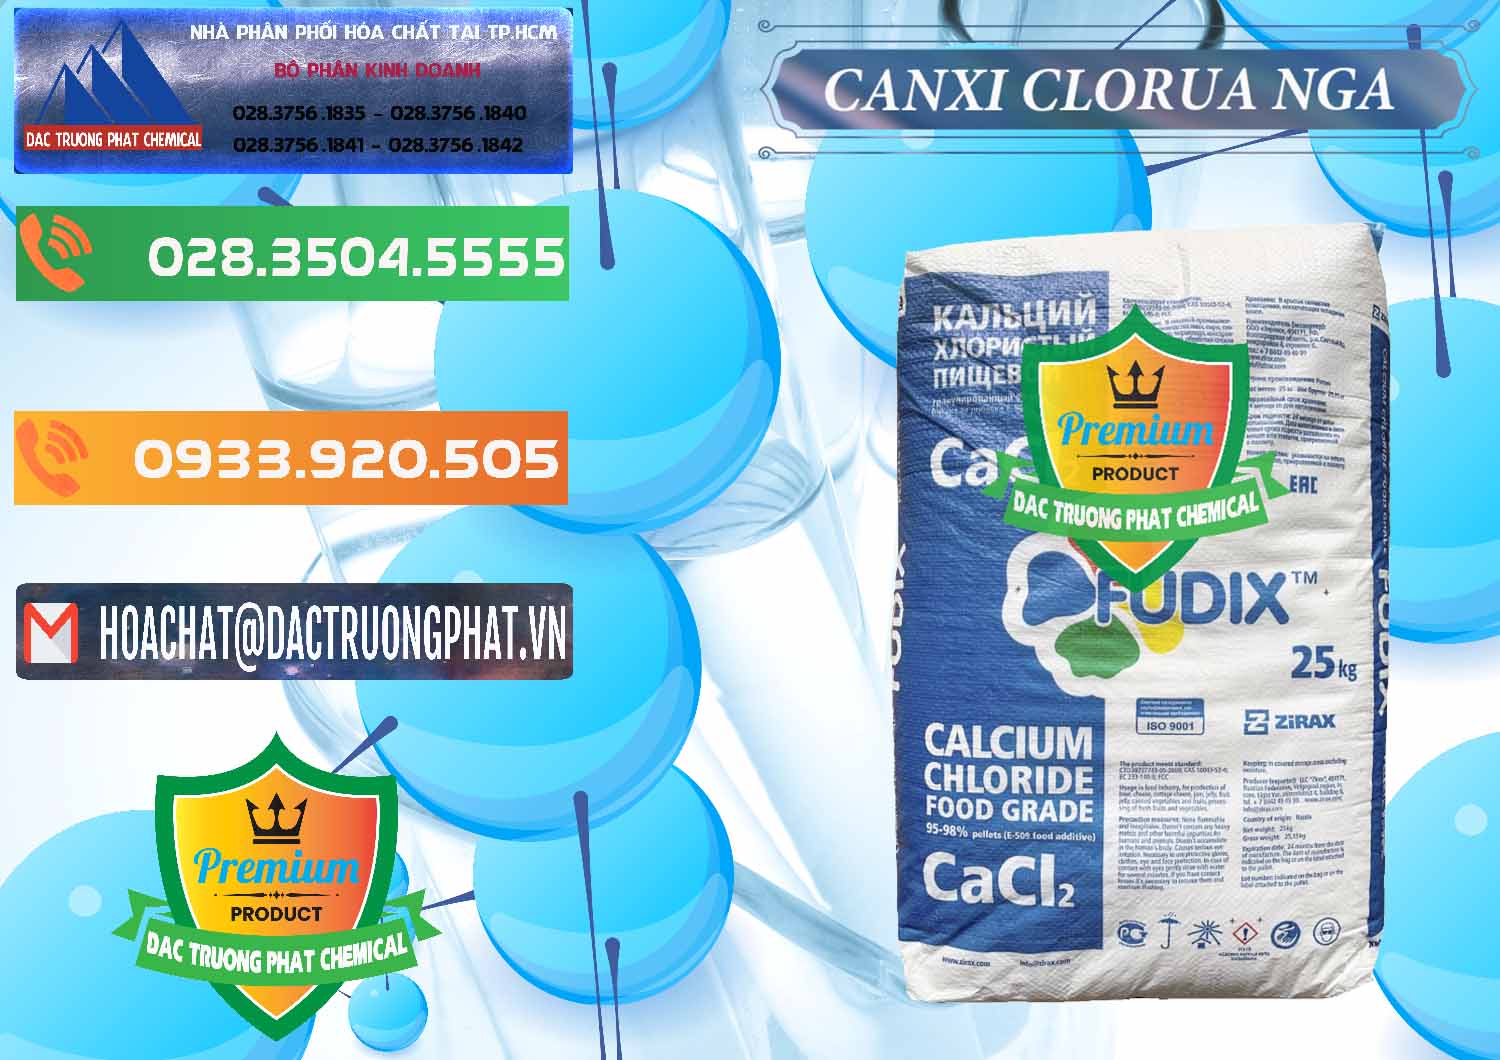 Cty bán & cung ứng CaCl2 – Canxi Clorua Nga Russia - 0430 - Cty phân phối và cung cấp hóa chất tại TP.HCM - hoachatxulynuoc.com.vn